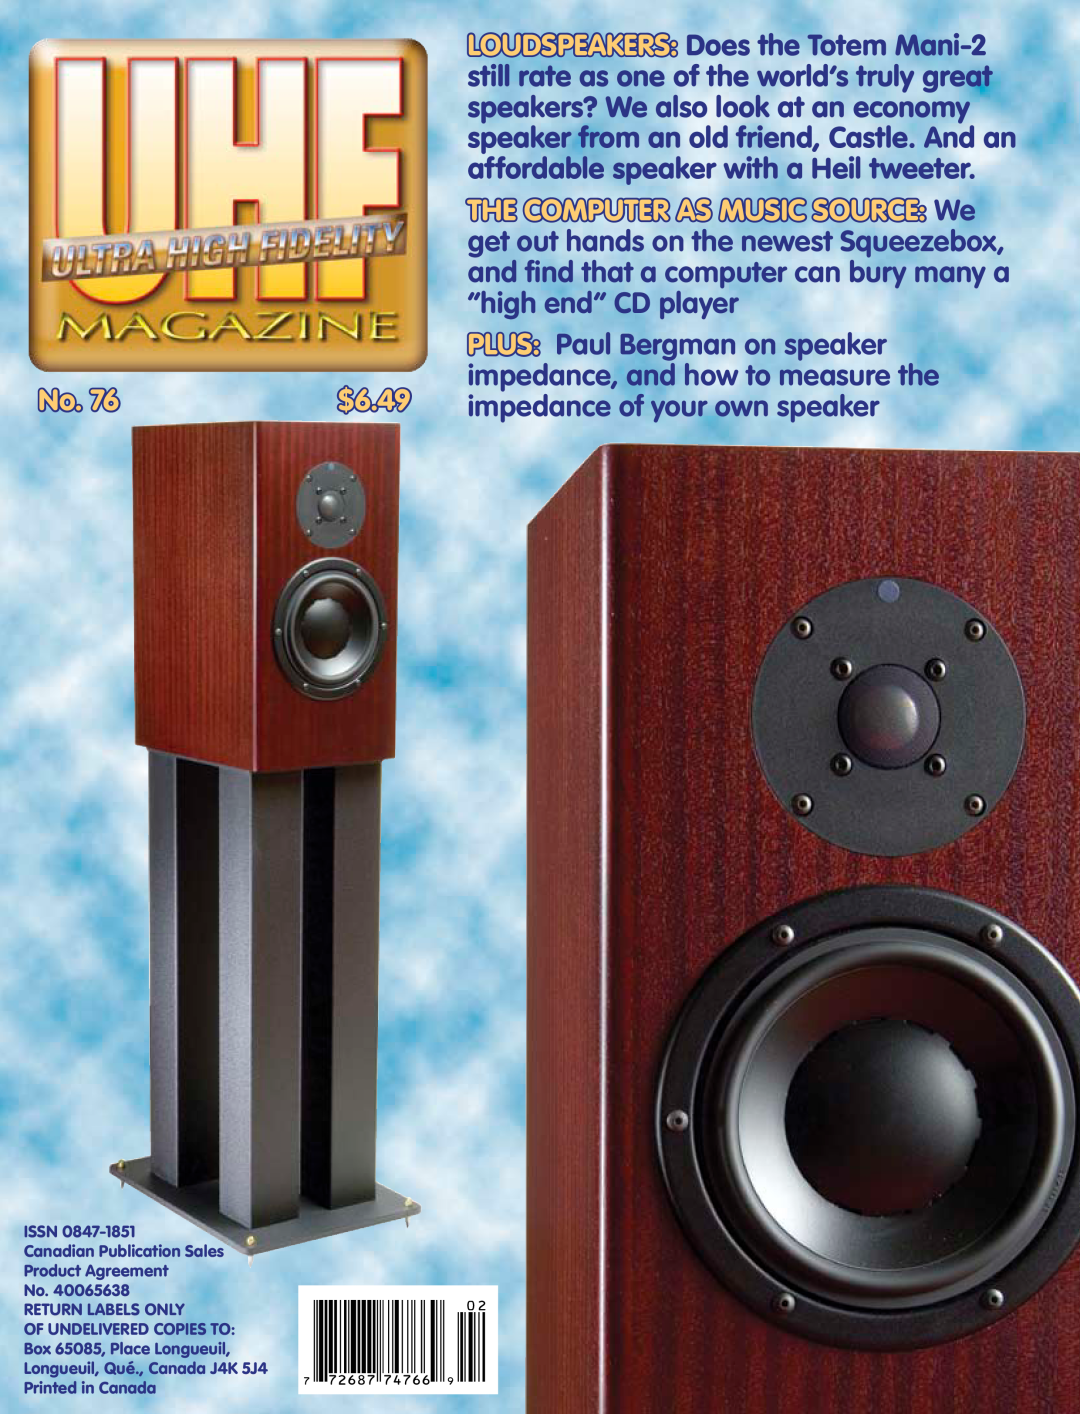 Koss 76 manual PLUS Paul Bergman on speaker, $6.49, impedance of your own speaker 